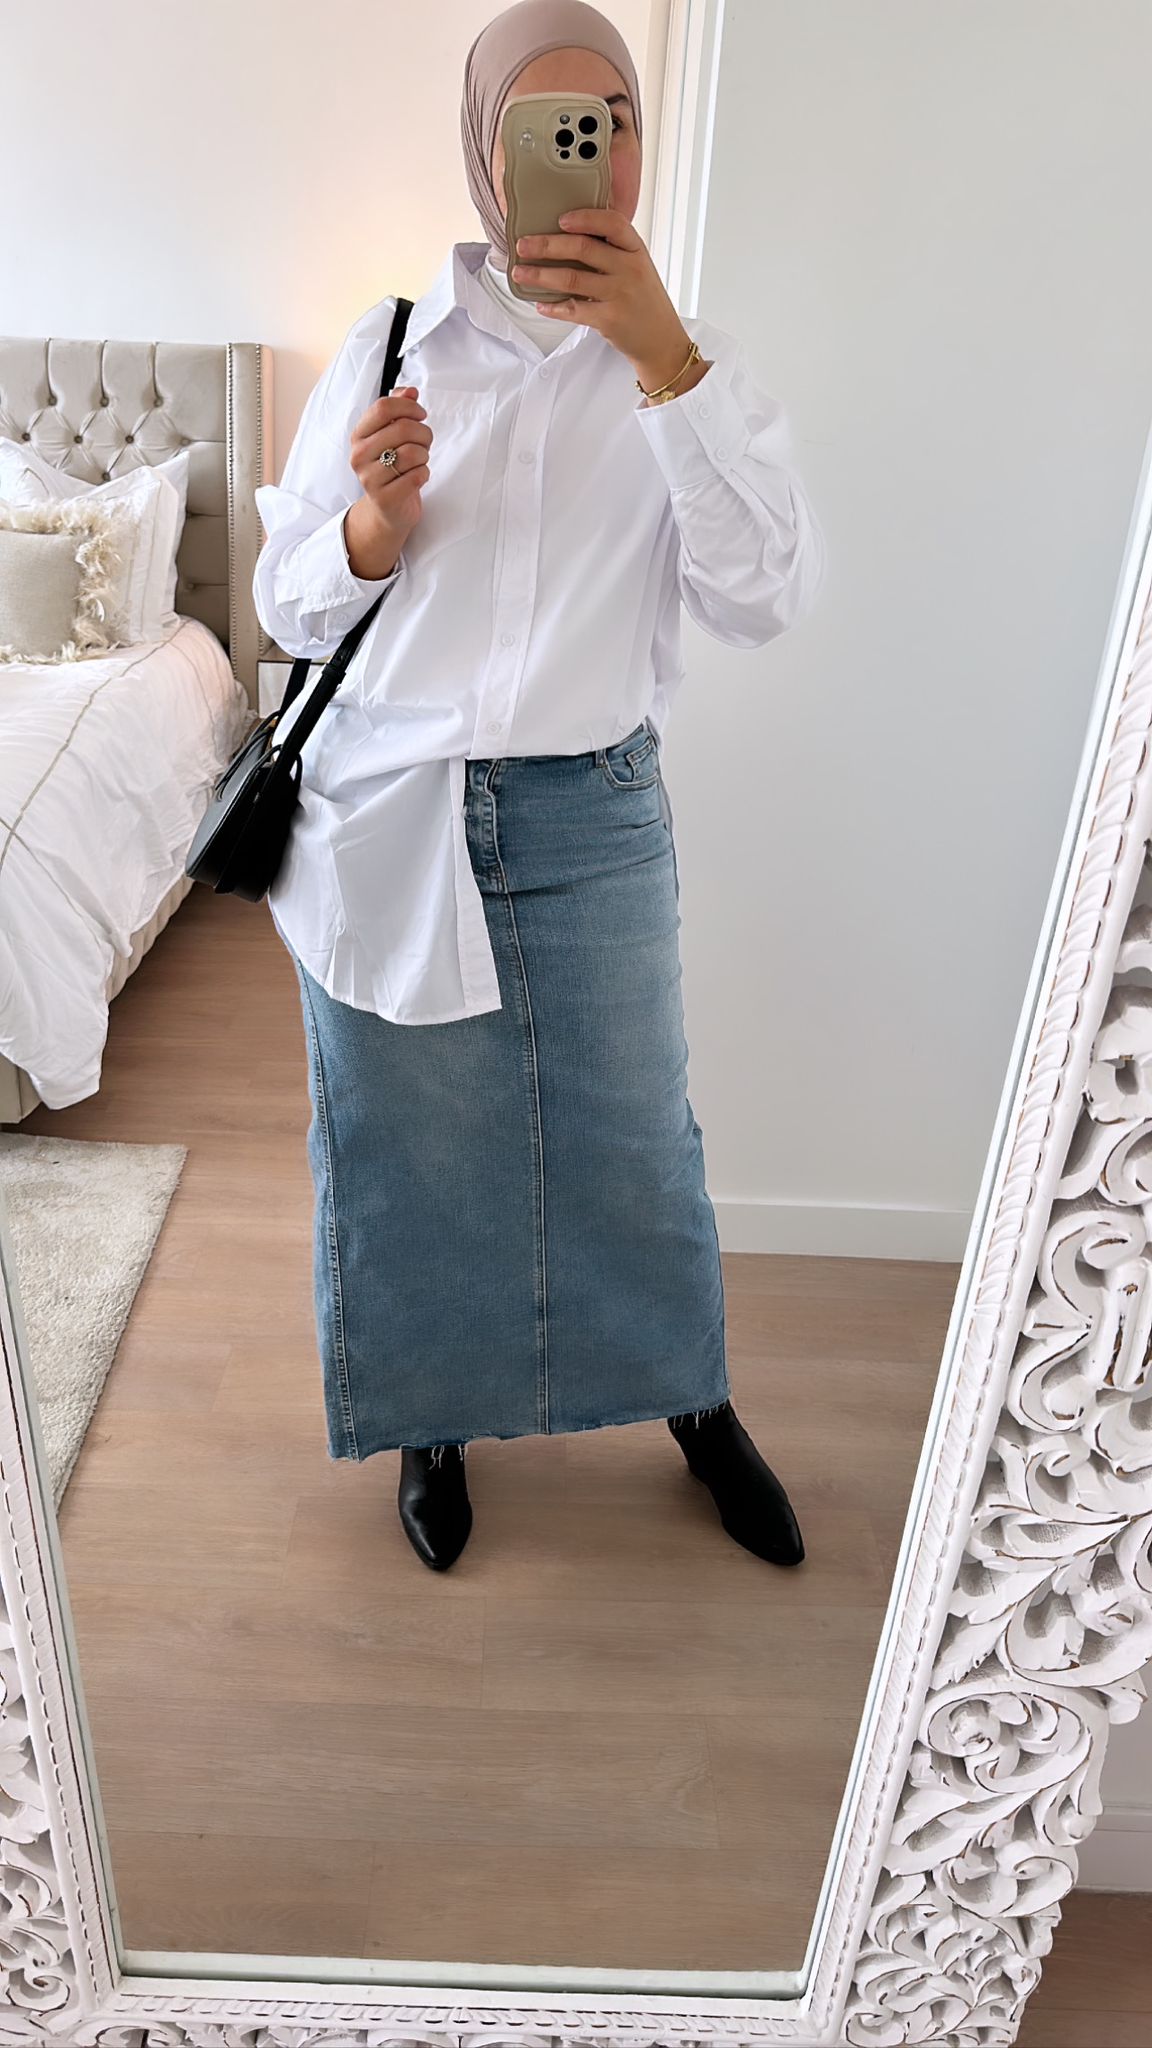 Miroir reflétant une jupe en jean bleu clair portée avec style classique